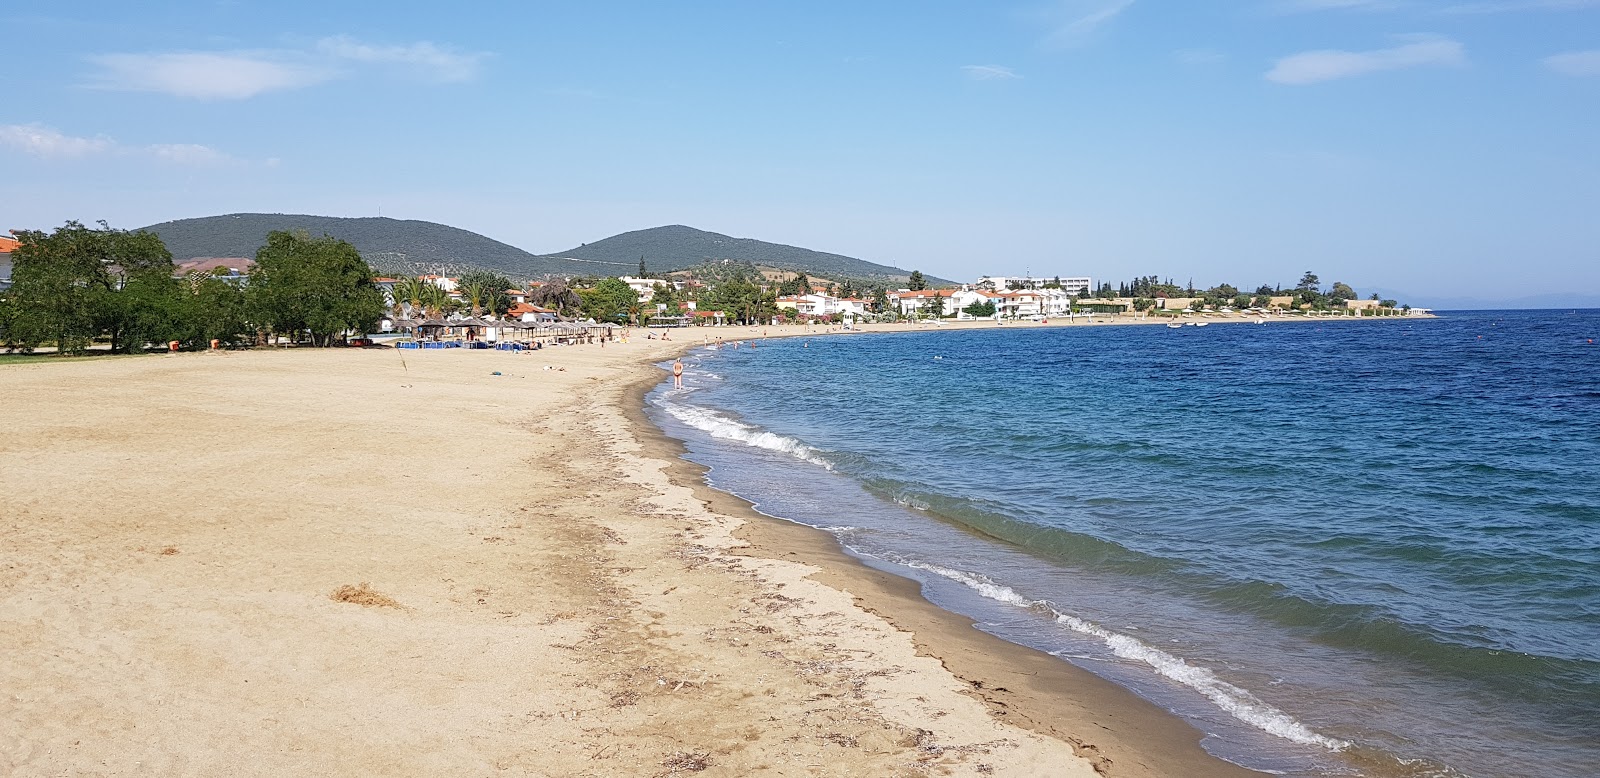 Foto av Gerakini beach med turkos rent vatten yta